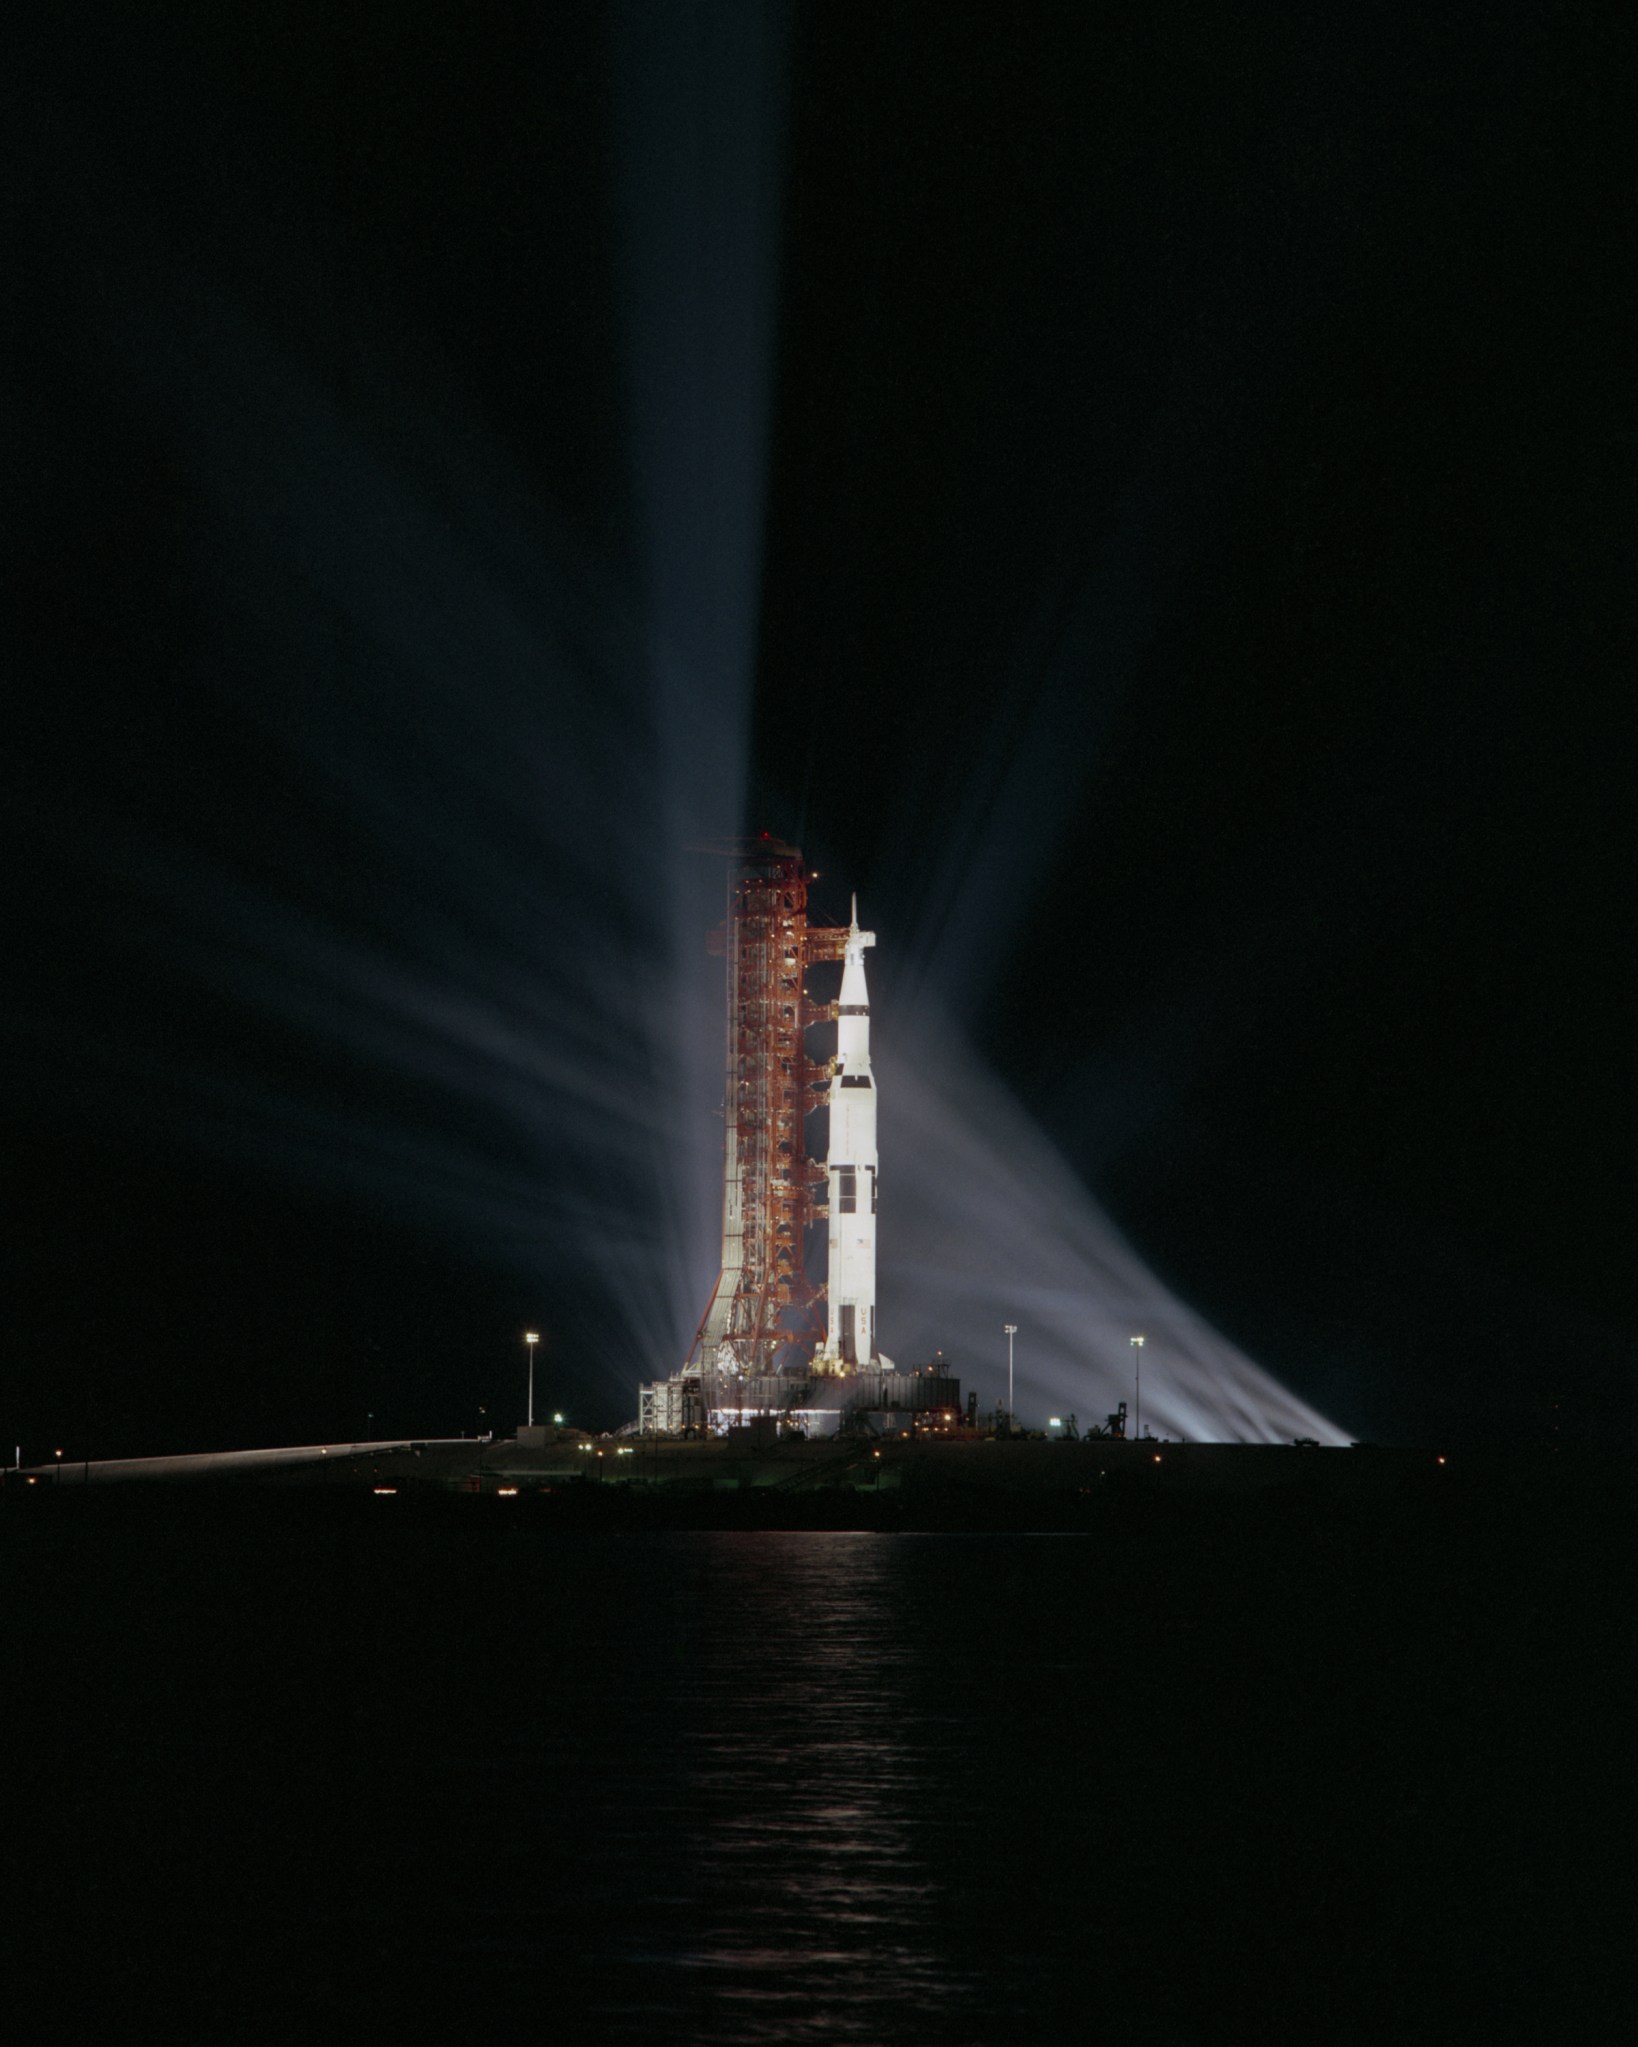 Apollo 8's Saturn V